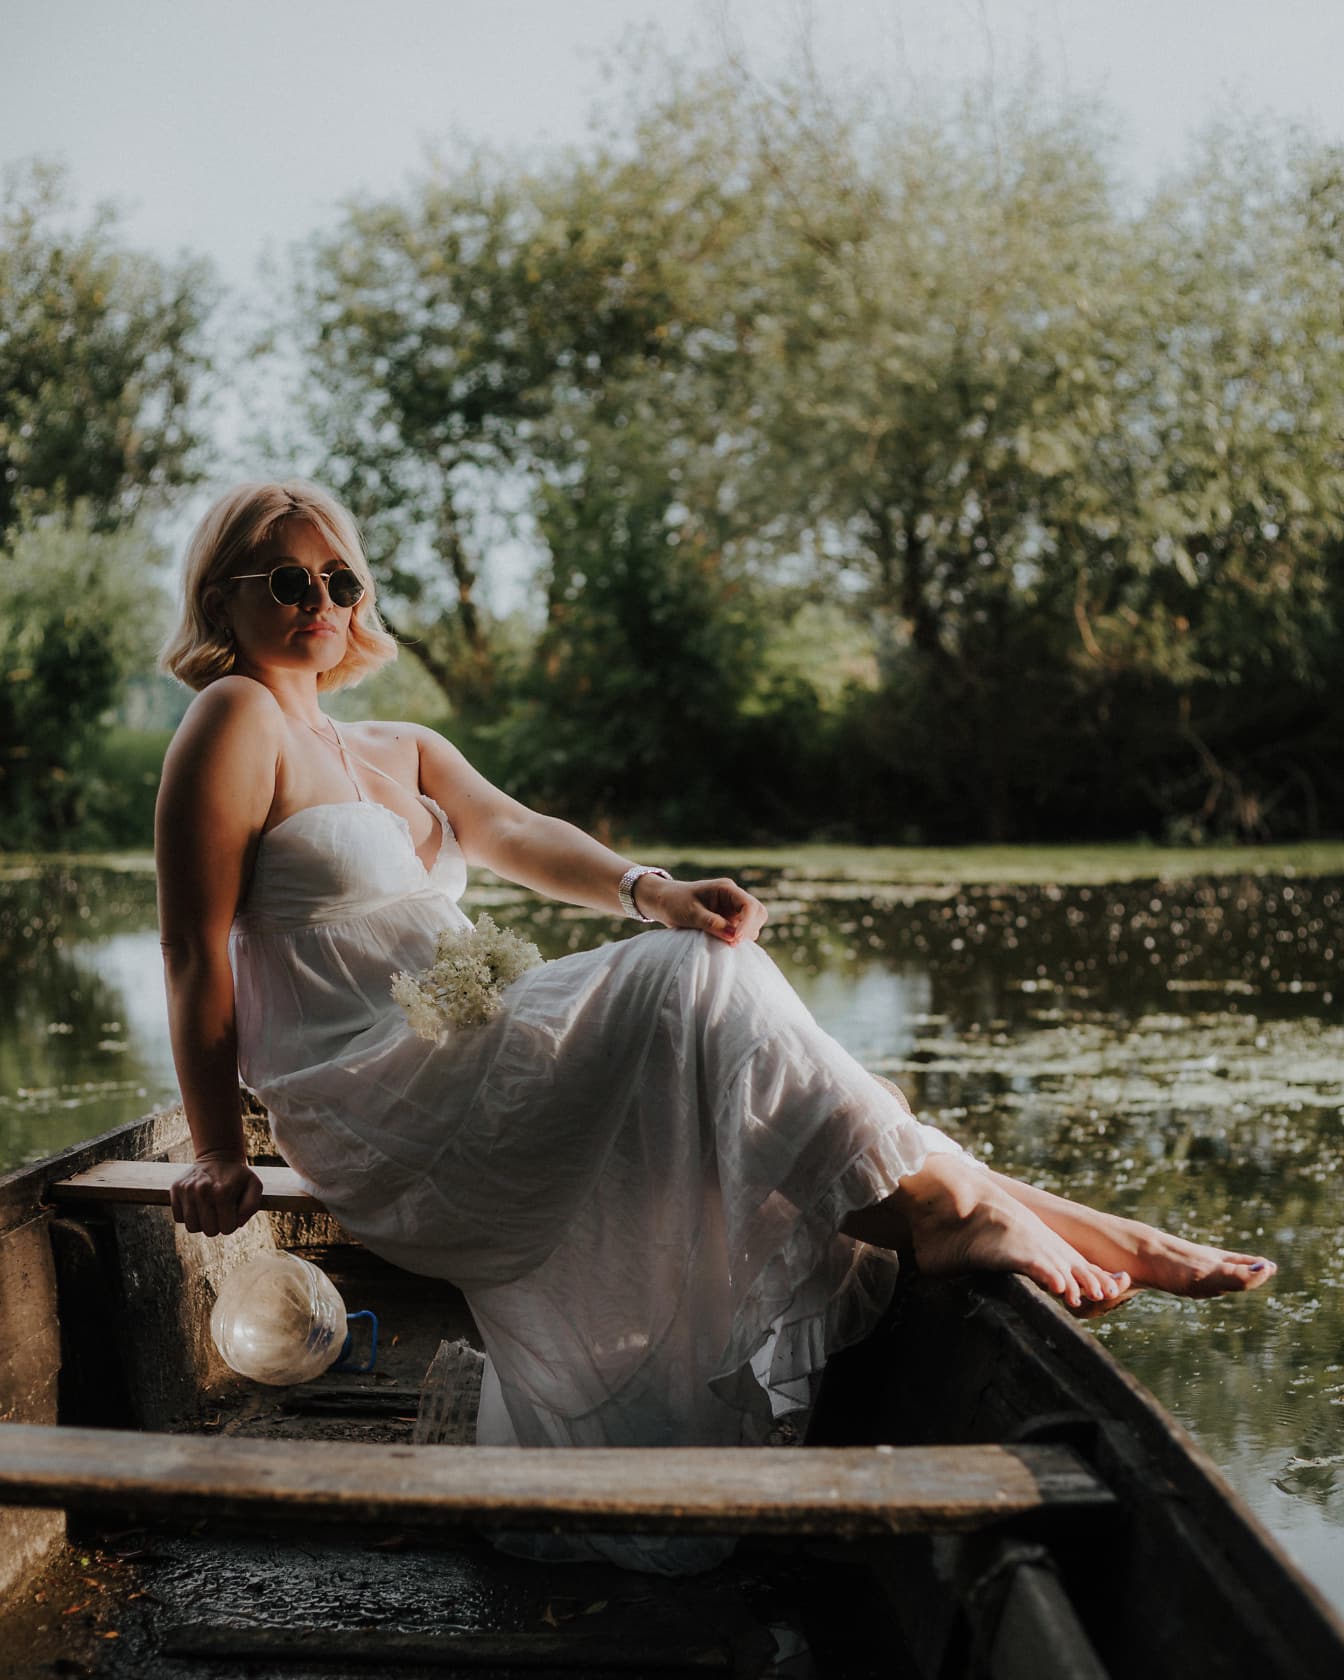 Cô dâu mặc váy cưới trắng theo phong cách đồng quê ngồi trên thuyền trên mặt nước